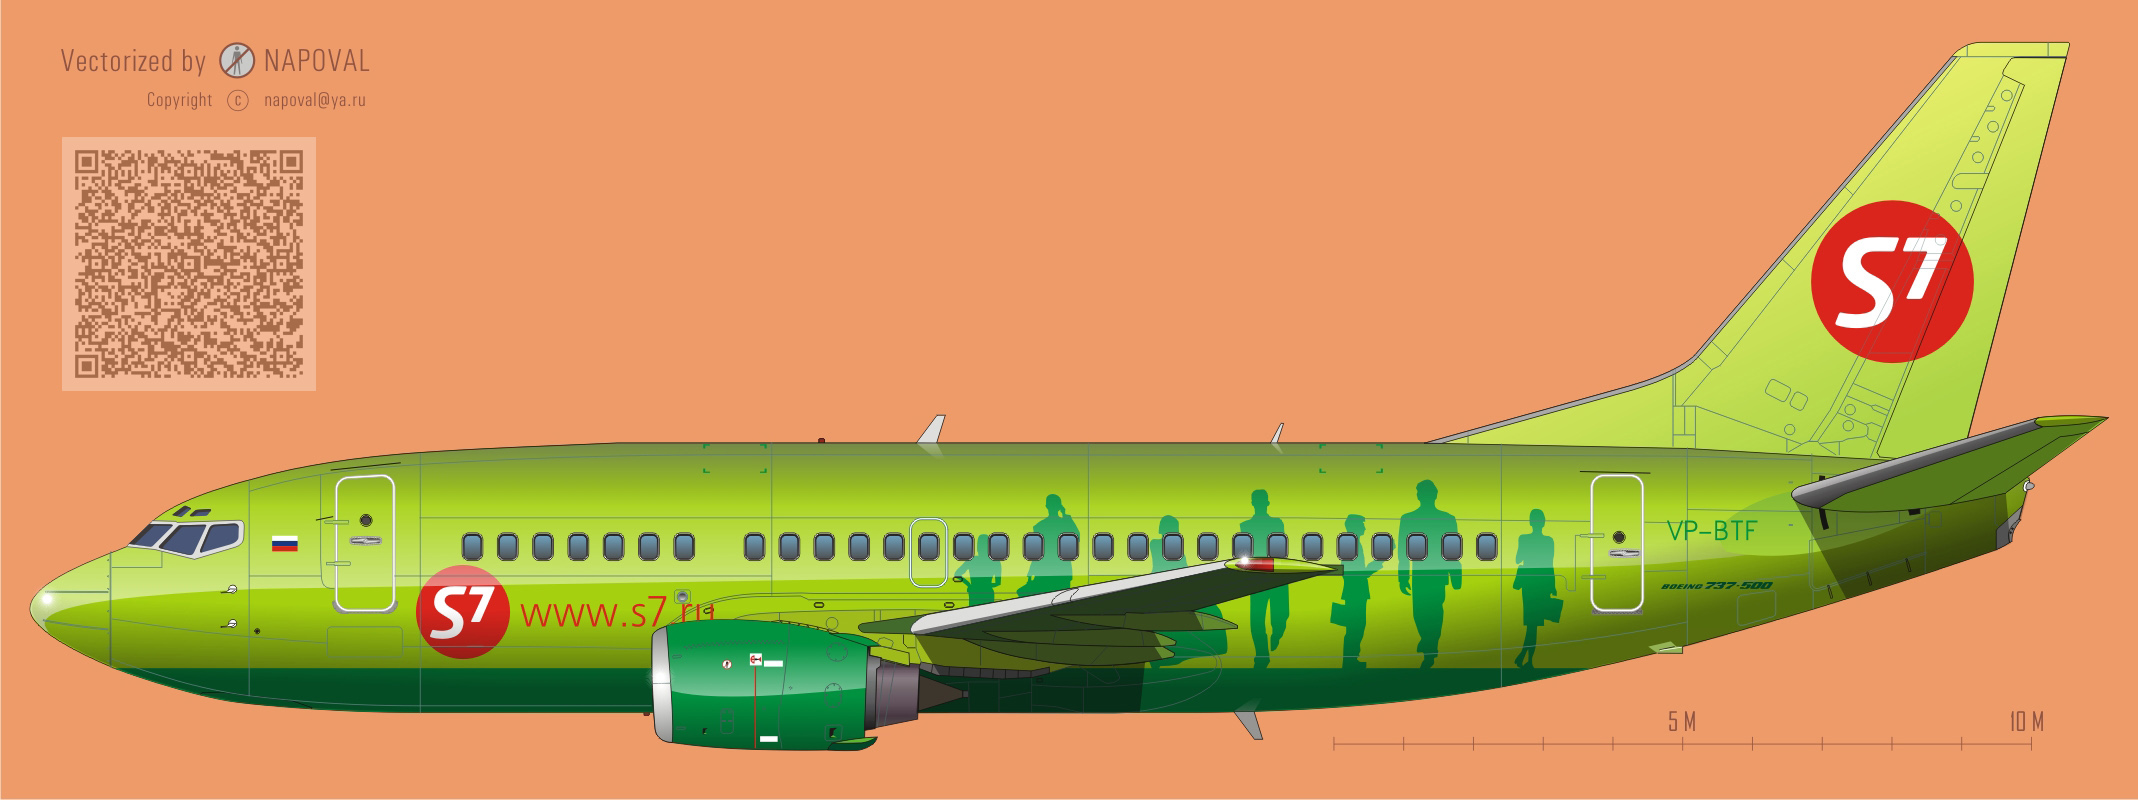 Профиль самолета Boeing 737 VT-BTF авиакомпании S7 (Сибирь) картинка очень большого размера /big size 2266x800